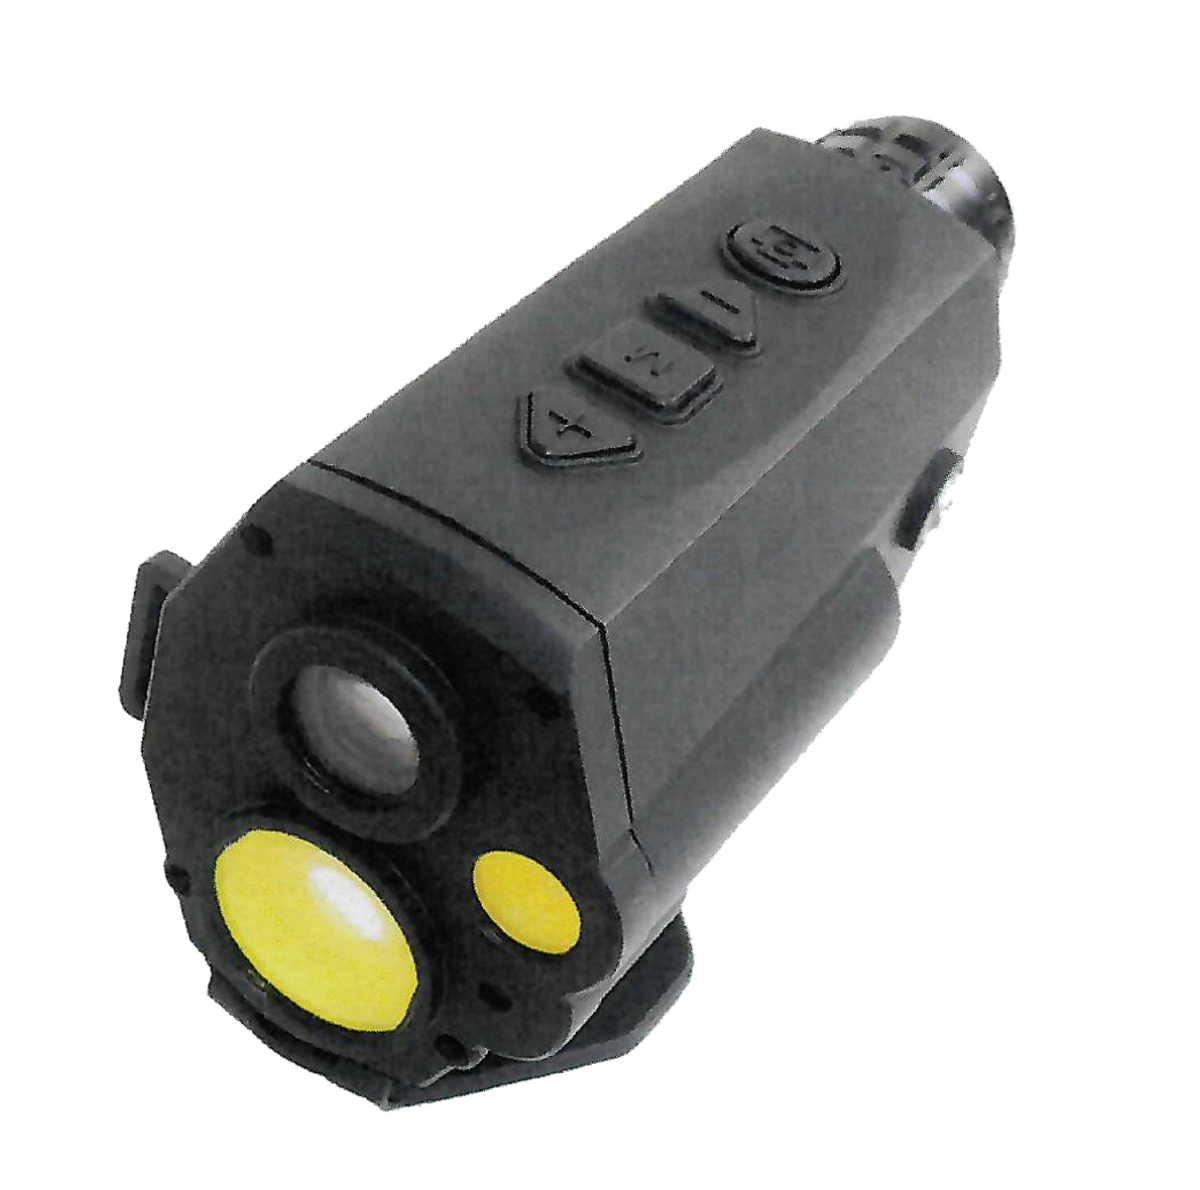 HML8 Laser Range Finder (باللغة الإنجليزية)